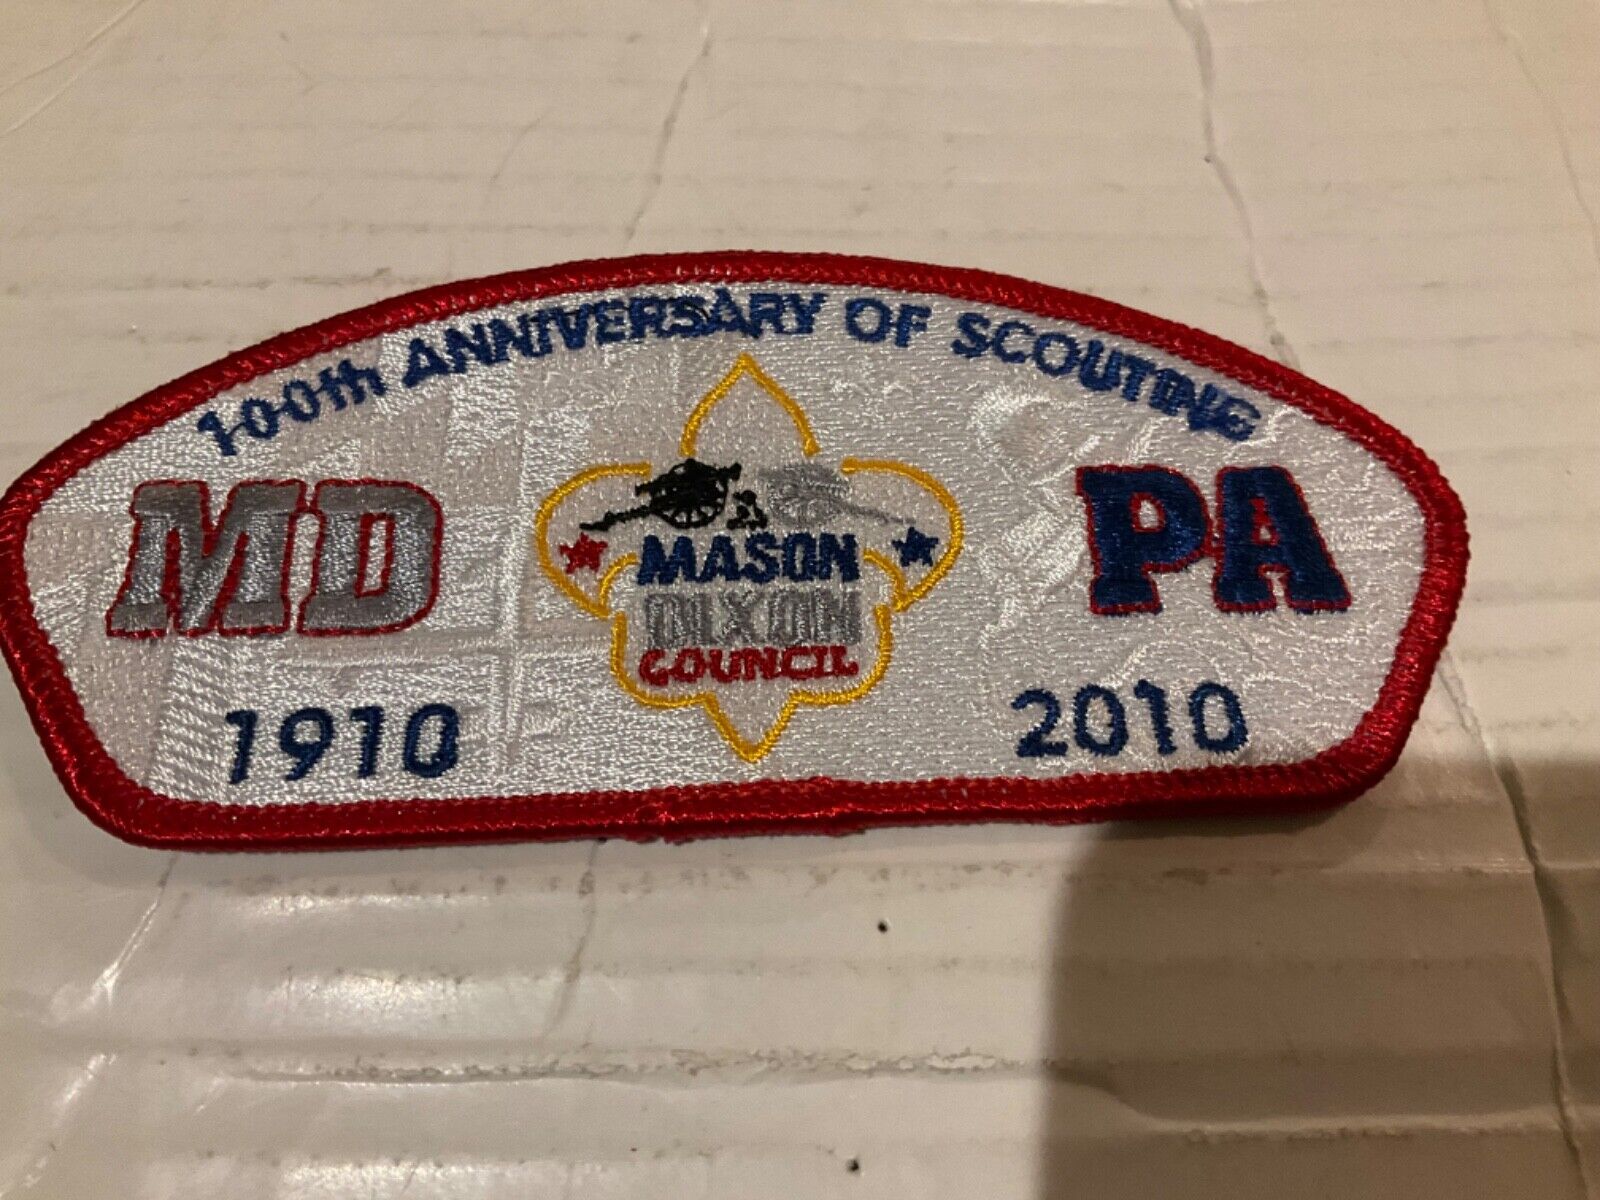 Mason Dixon Council CSP S46 BSA 100th Anniversary 2010 b